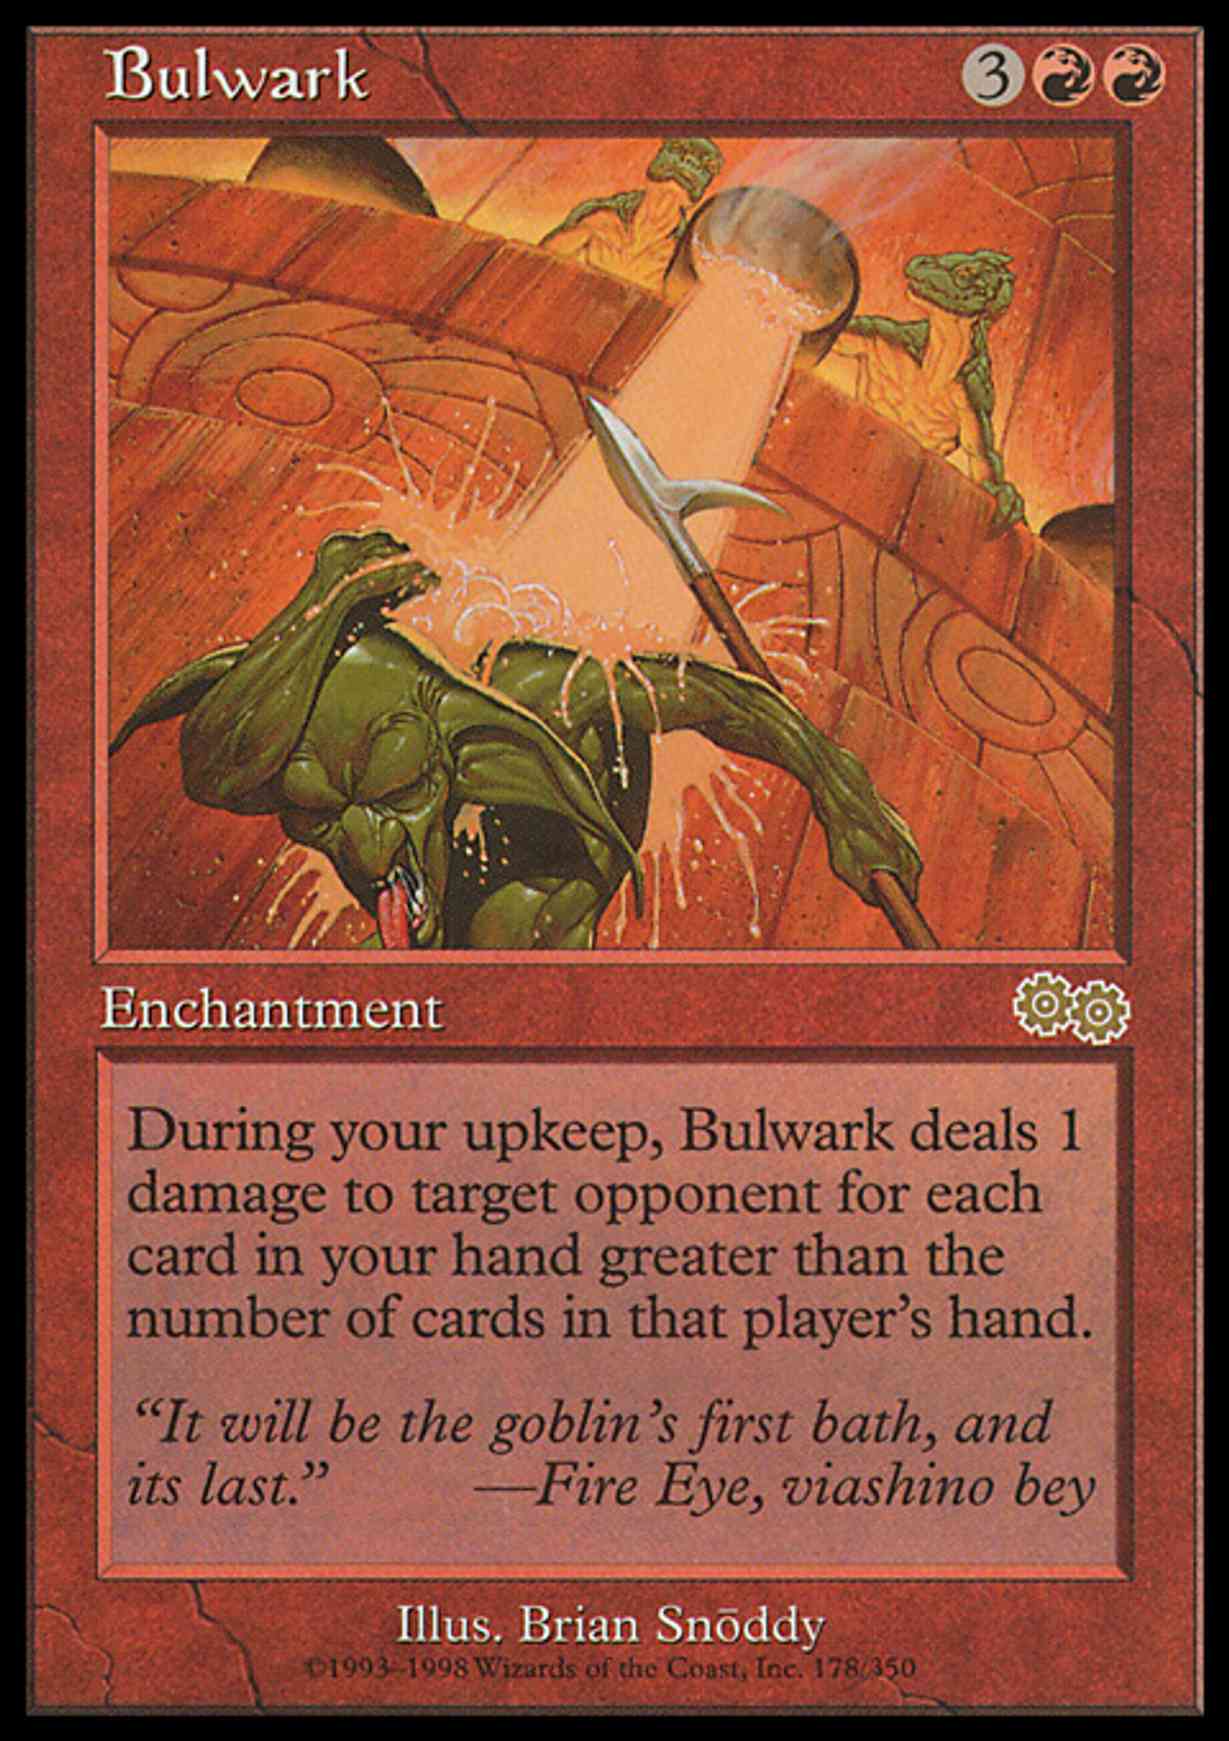 Bulwark magic card front